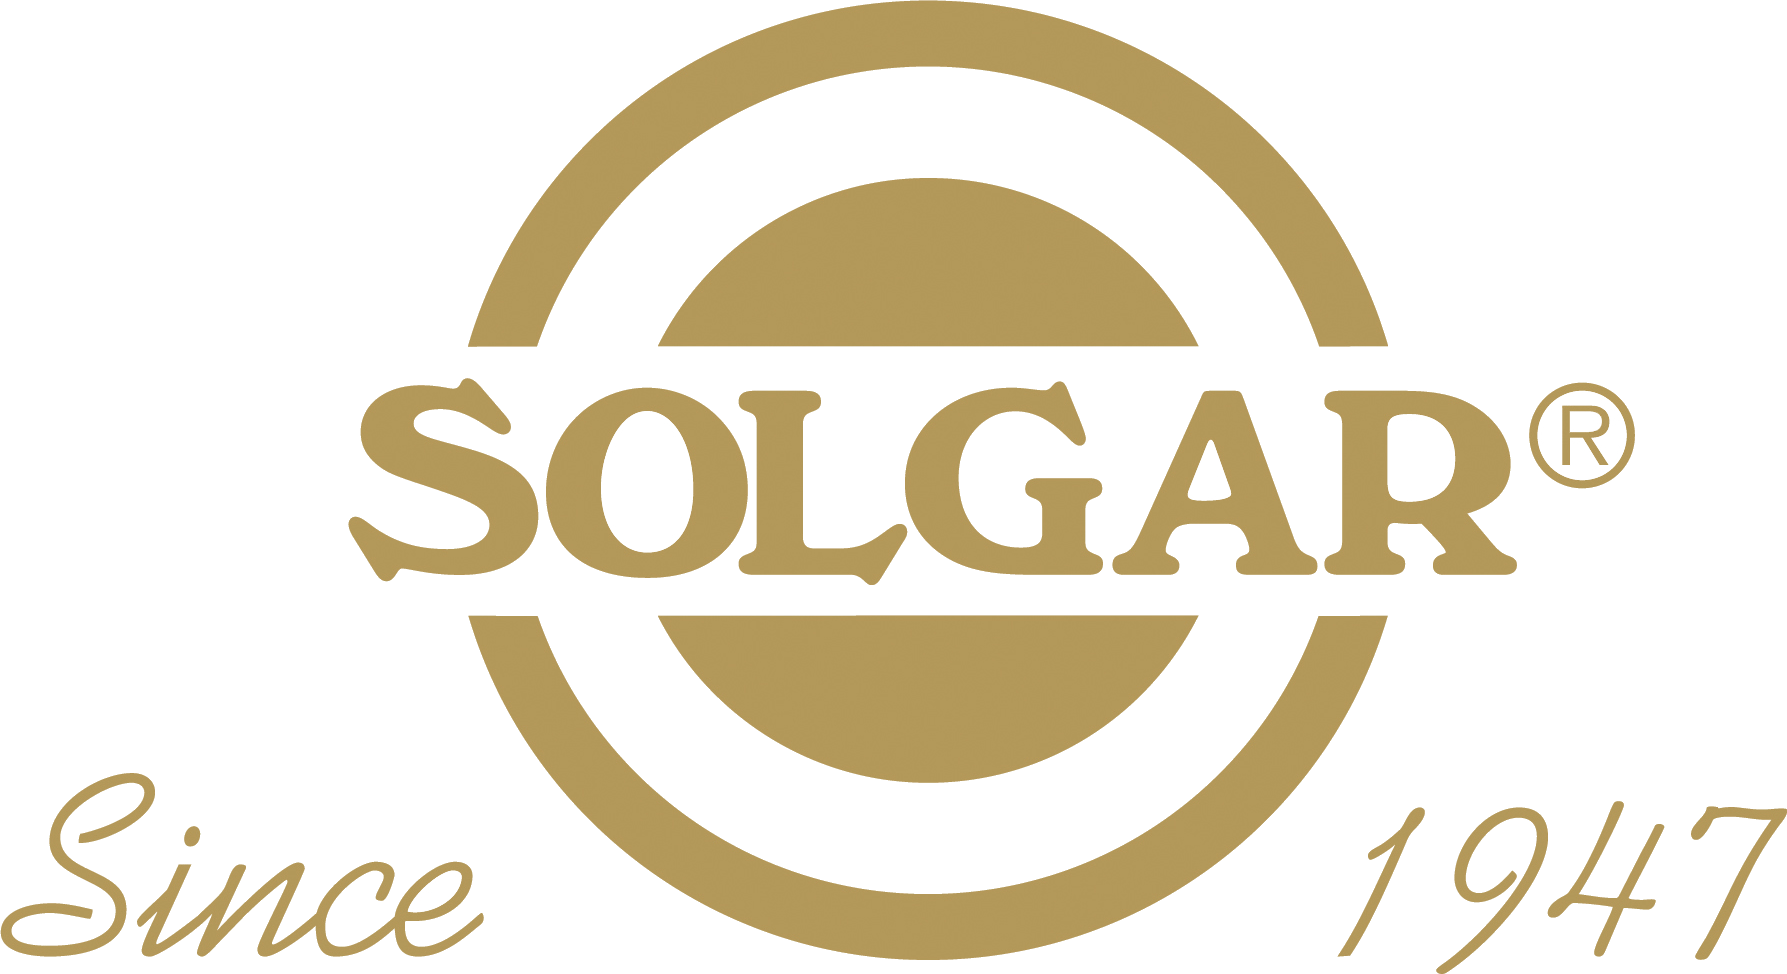 Solgar France